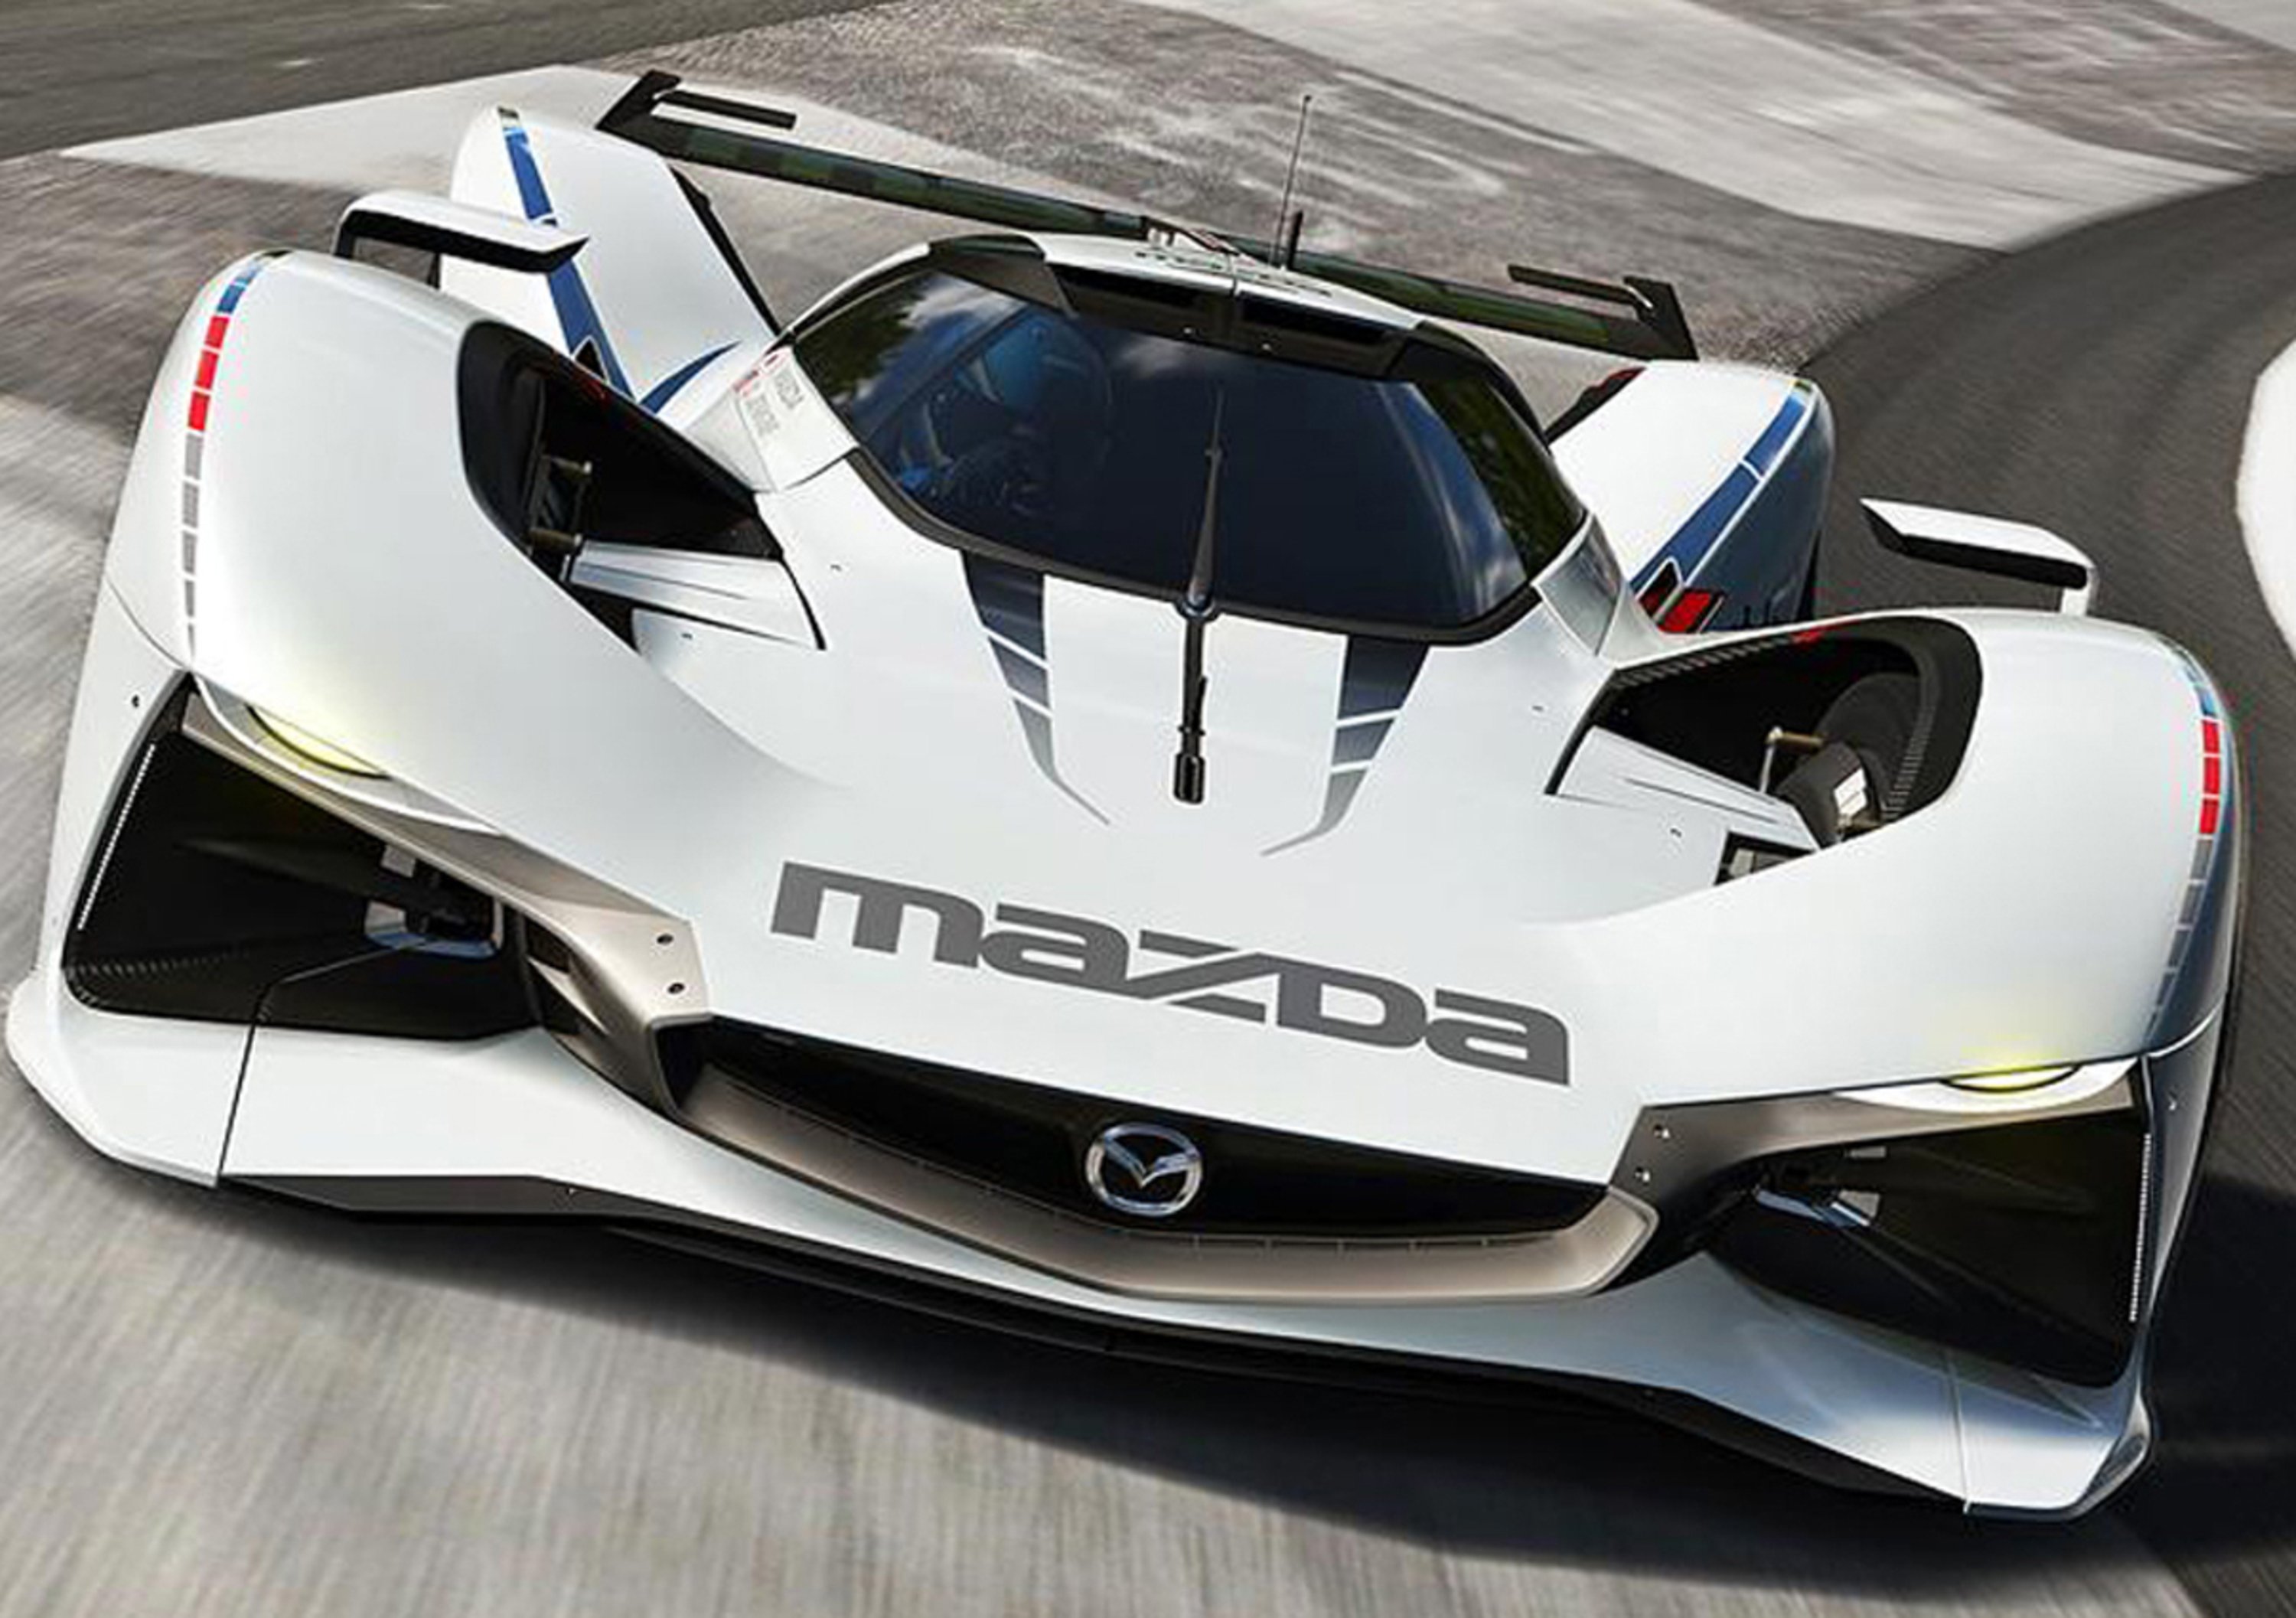 Mazda Lm55 Vision Gran Turismo Una Concept Ispirata Alla Leggendaria